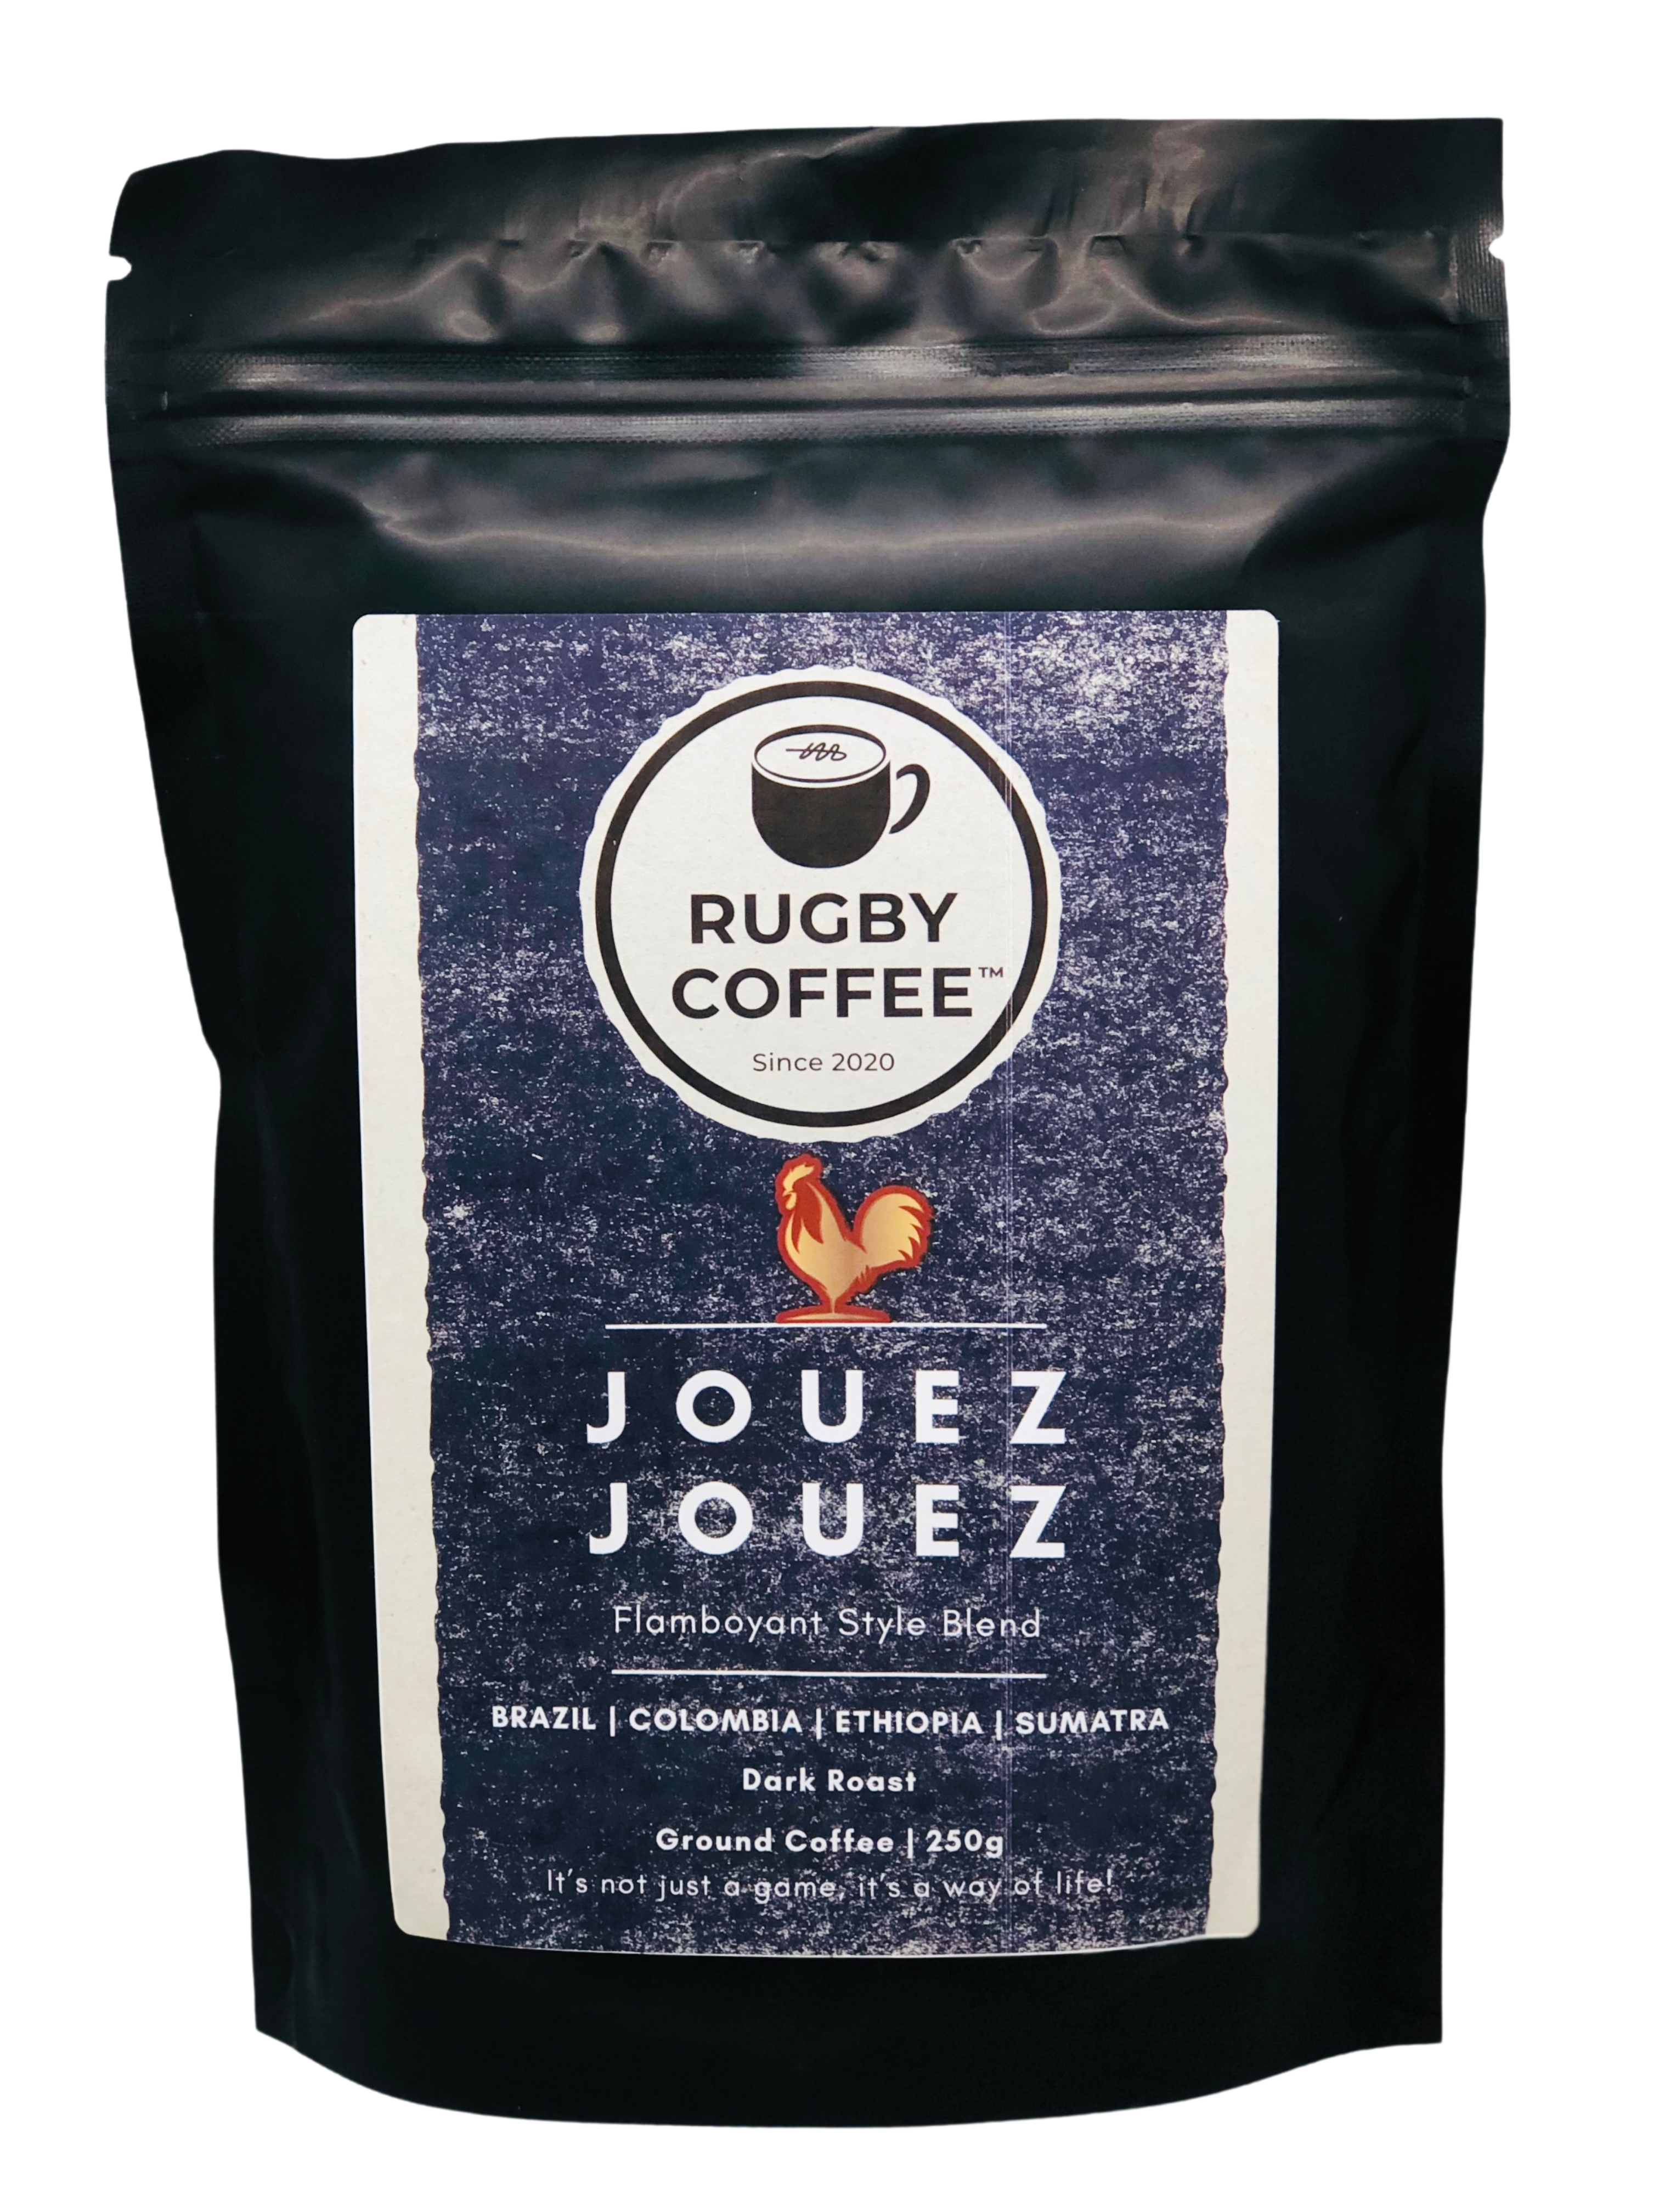 JOUEZ JOUEZ 250g Ground Coffee